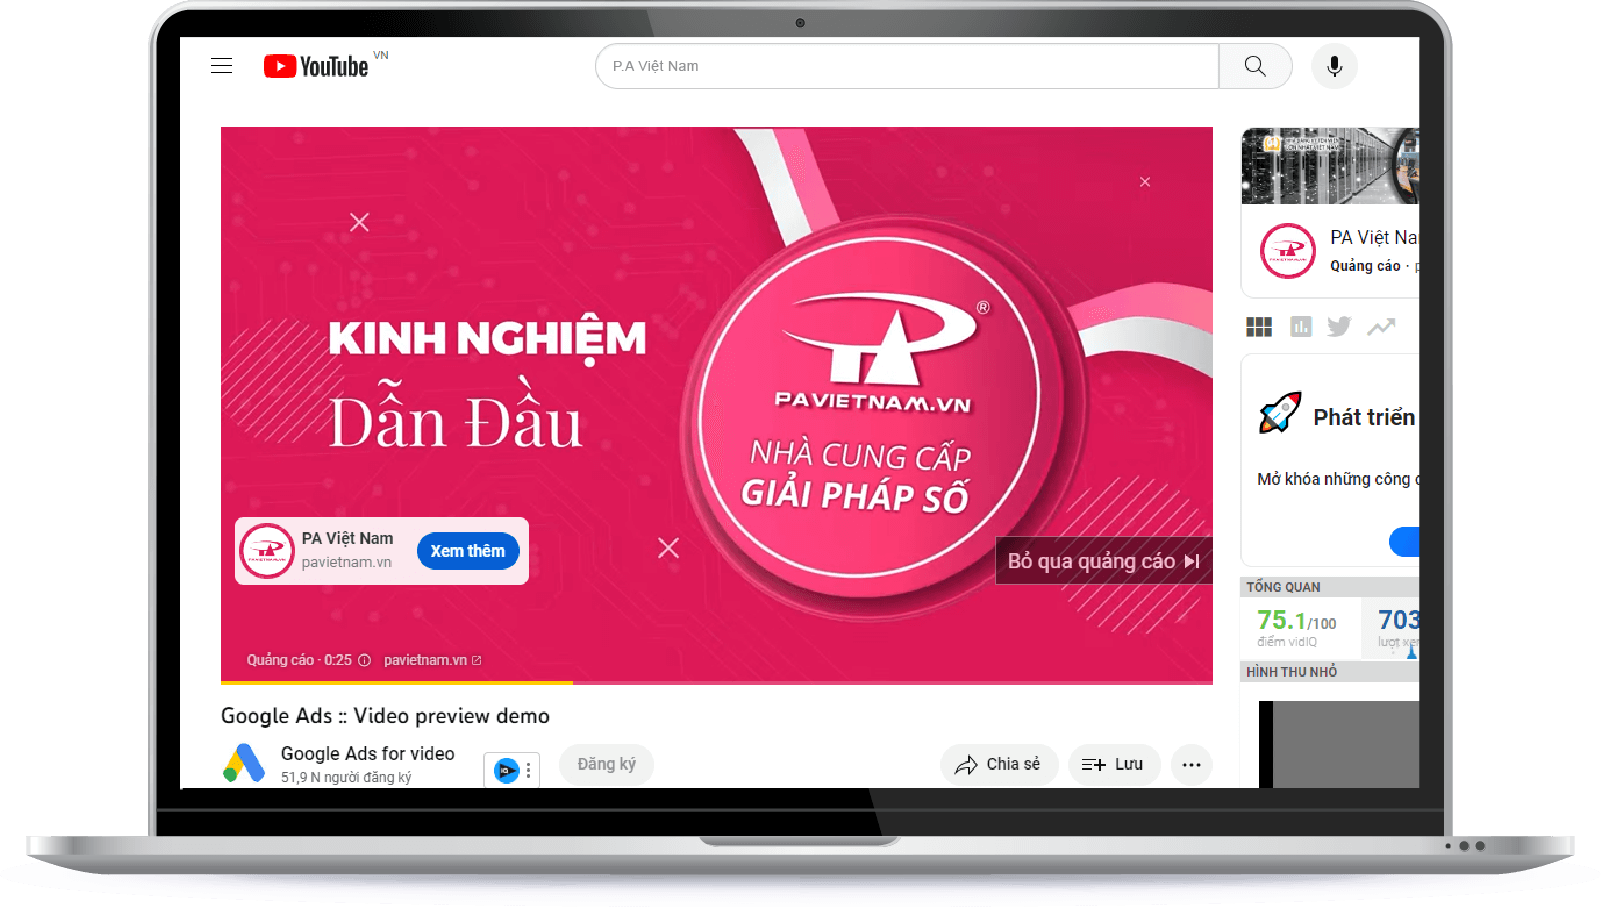 Dịch vụ Ads30s - Công ty TNHH P.A Việt Nam